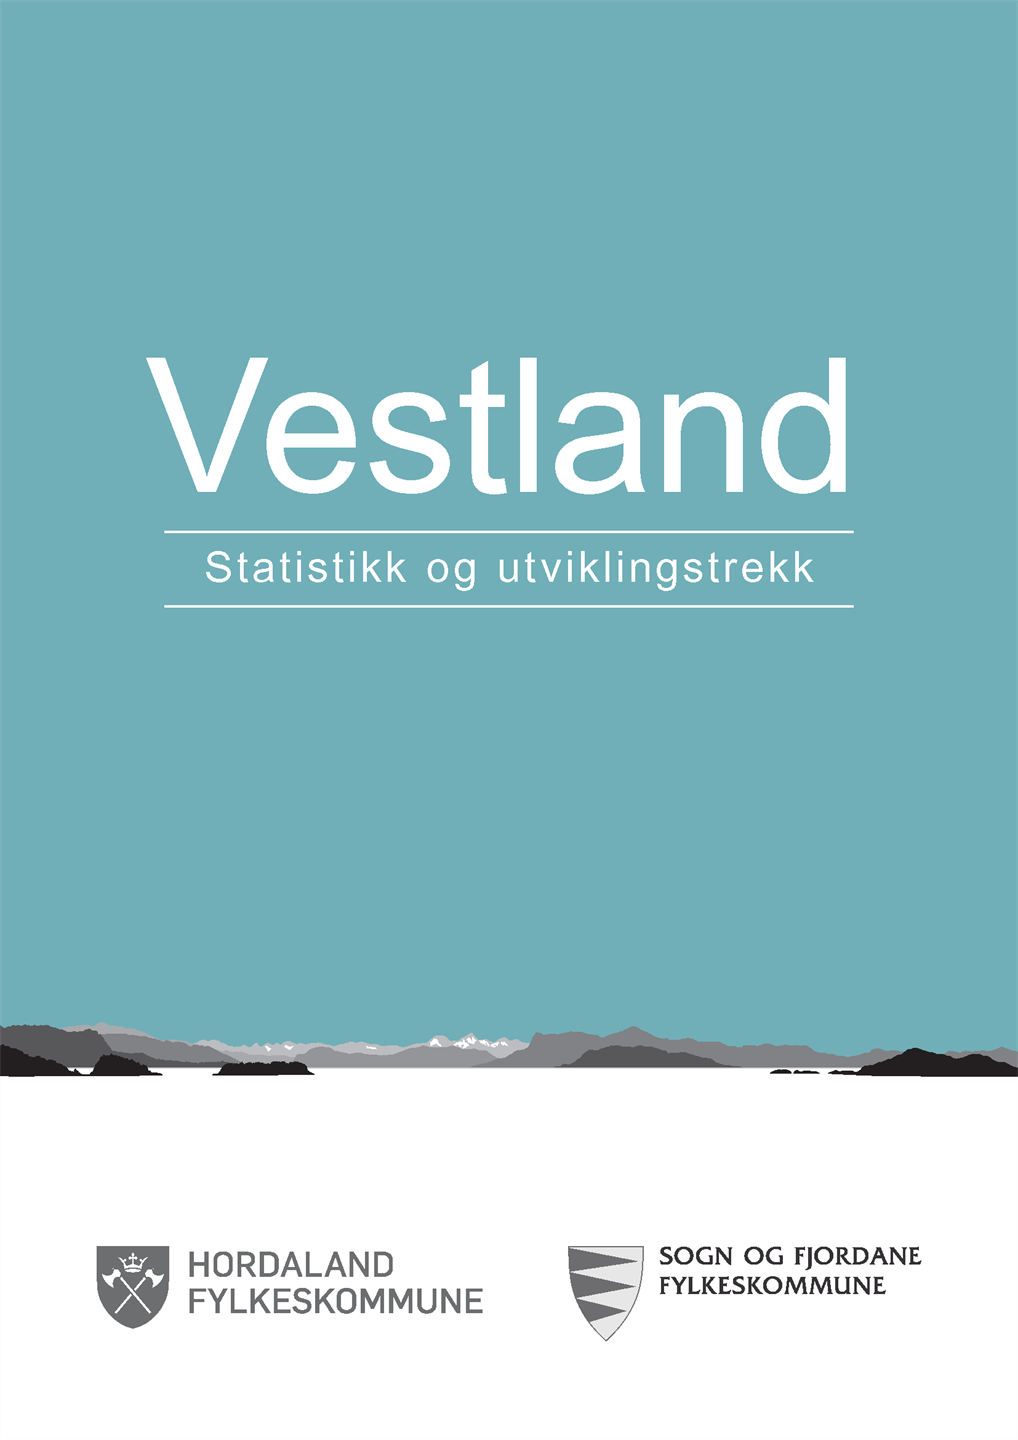 Framside for rapporten "Vestland - Statistikk og utviklingstrekk". Blå bakgrunn og logo frå Sogn og Fjordane fylkeskommune og Hordaland fylkeskommune.